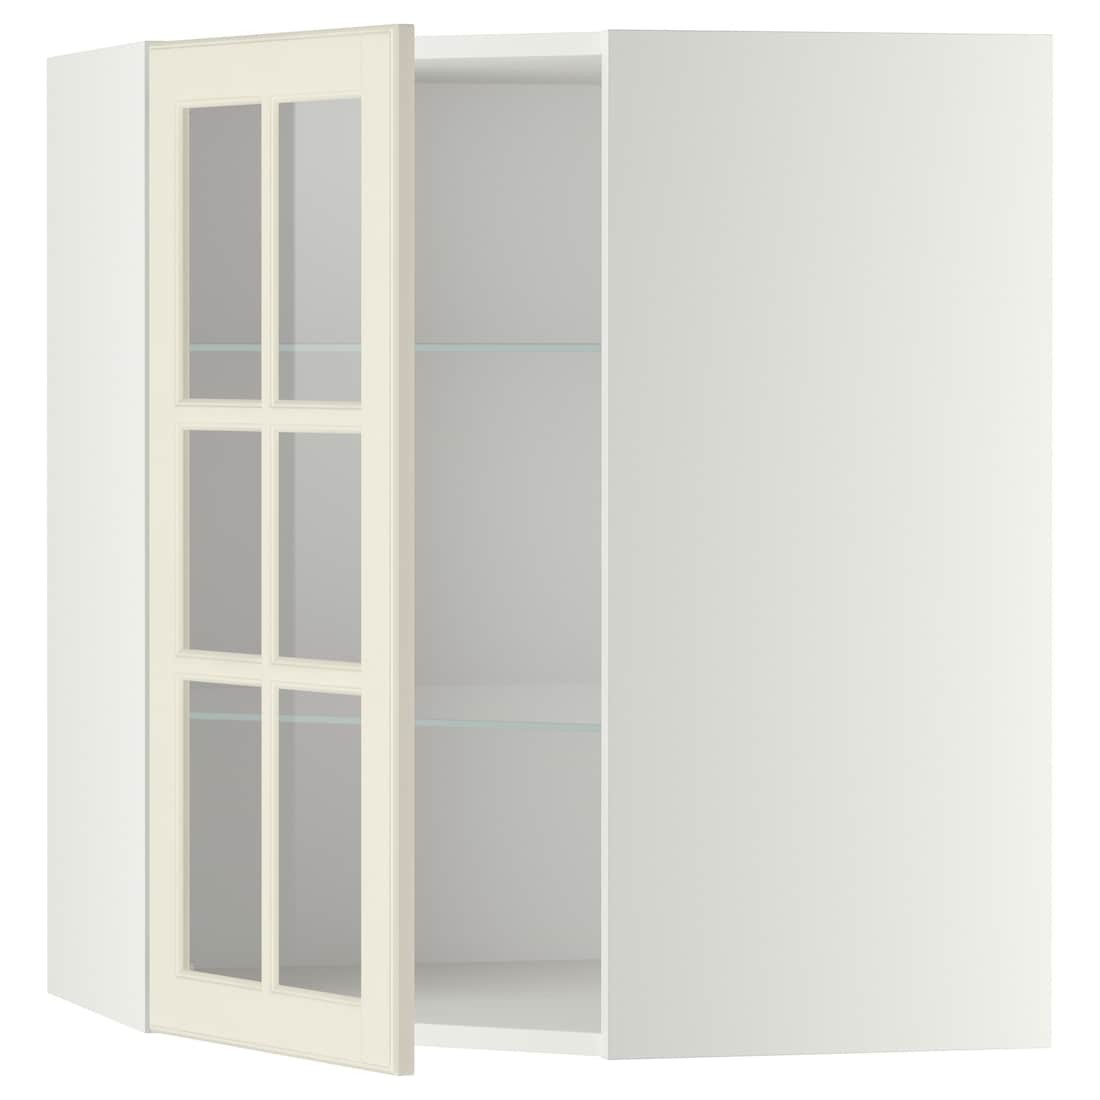 METOD МЕТОД Угловой настенный шкаф с полками / стеклянная дверь, белый / Bodbyn кремовый, 68x80 см